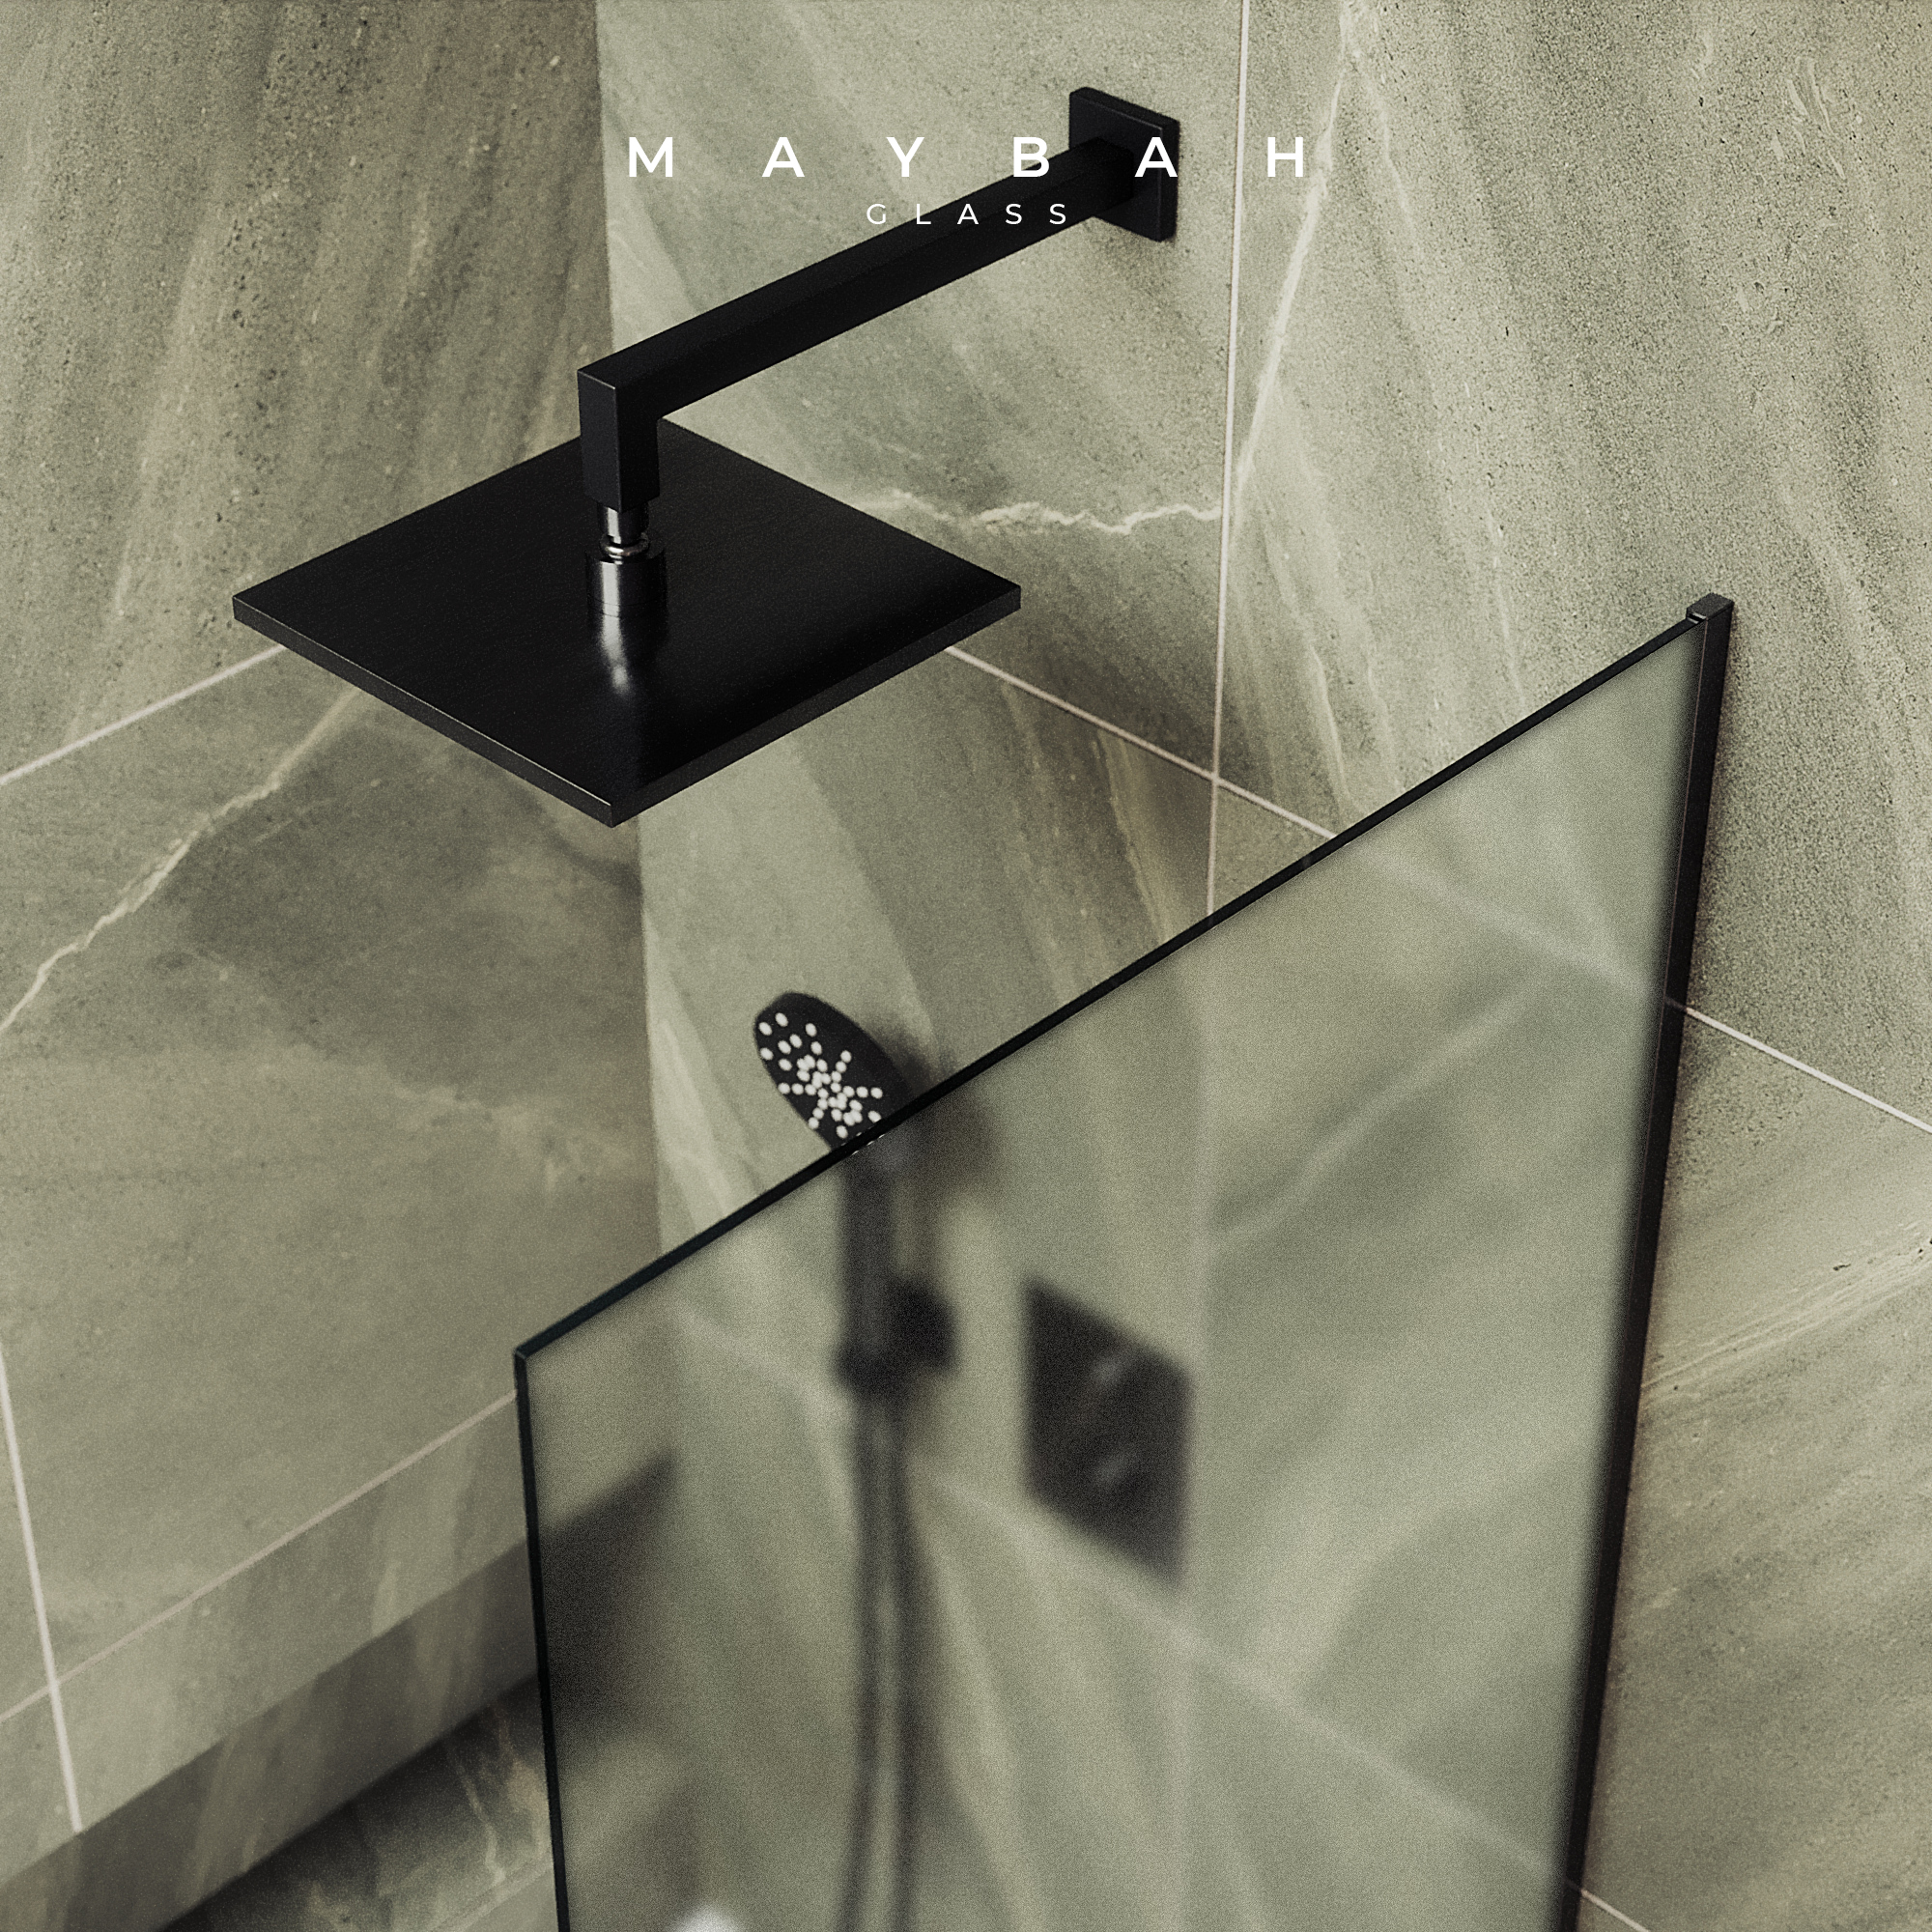 Шторка для ванны MaybahGlass 30х140 MGV-253-6у стекло сатин, профиль черный - фото 4